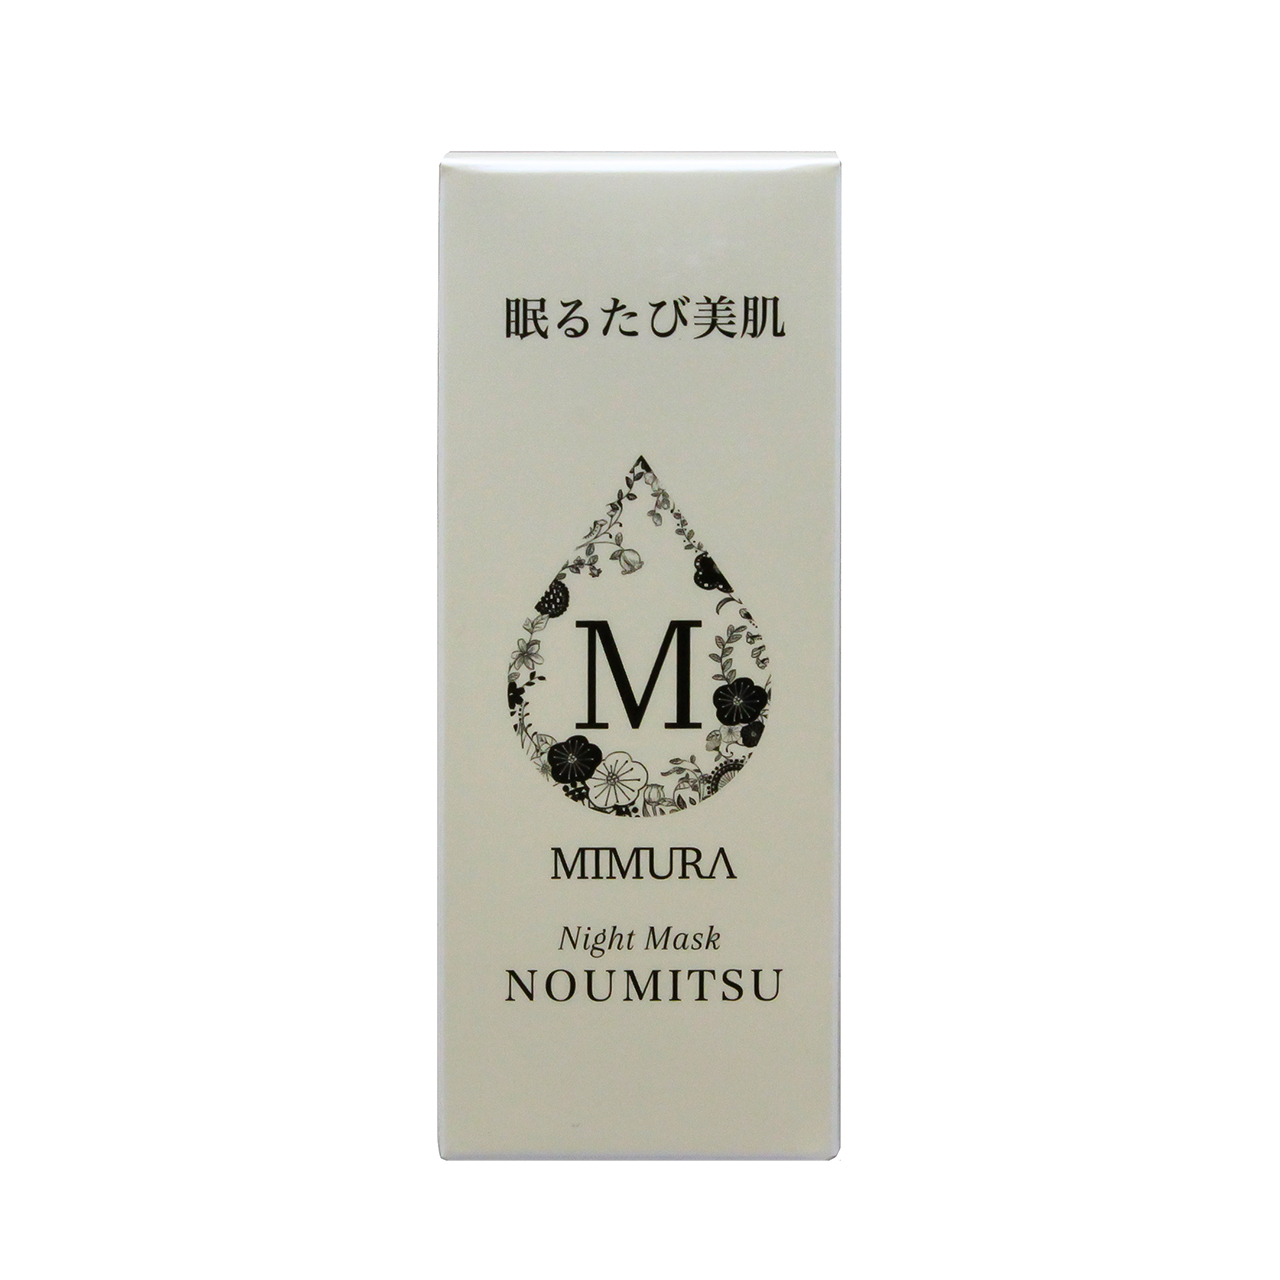 ミムラ MIMURA ナイトマスク NOUMITSU 48g